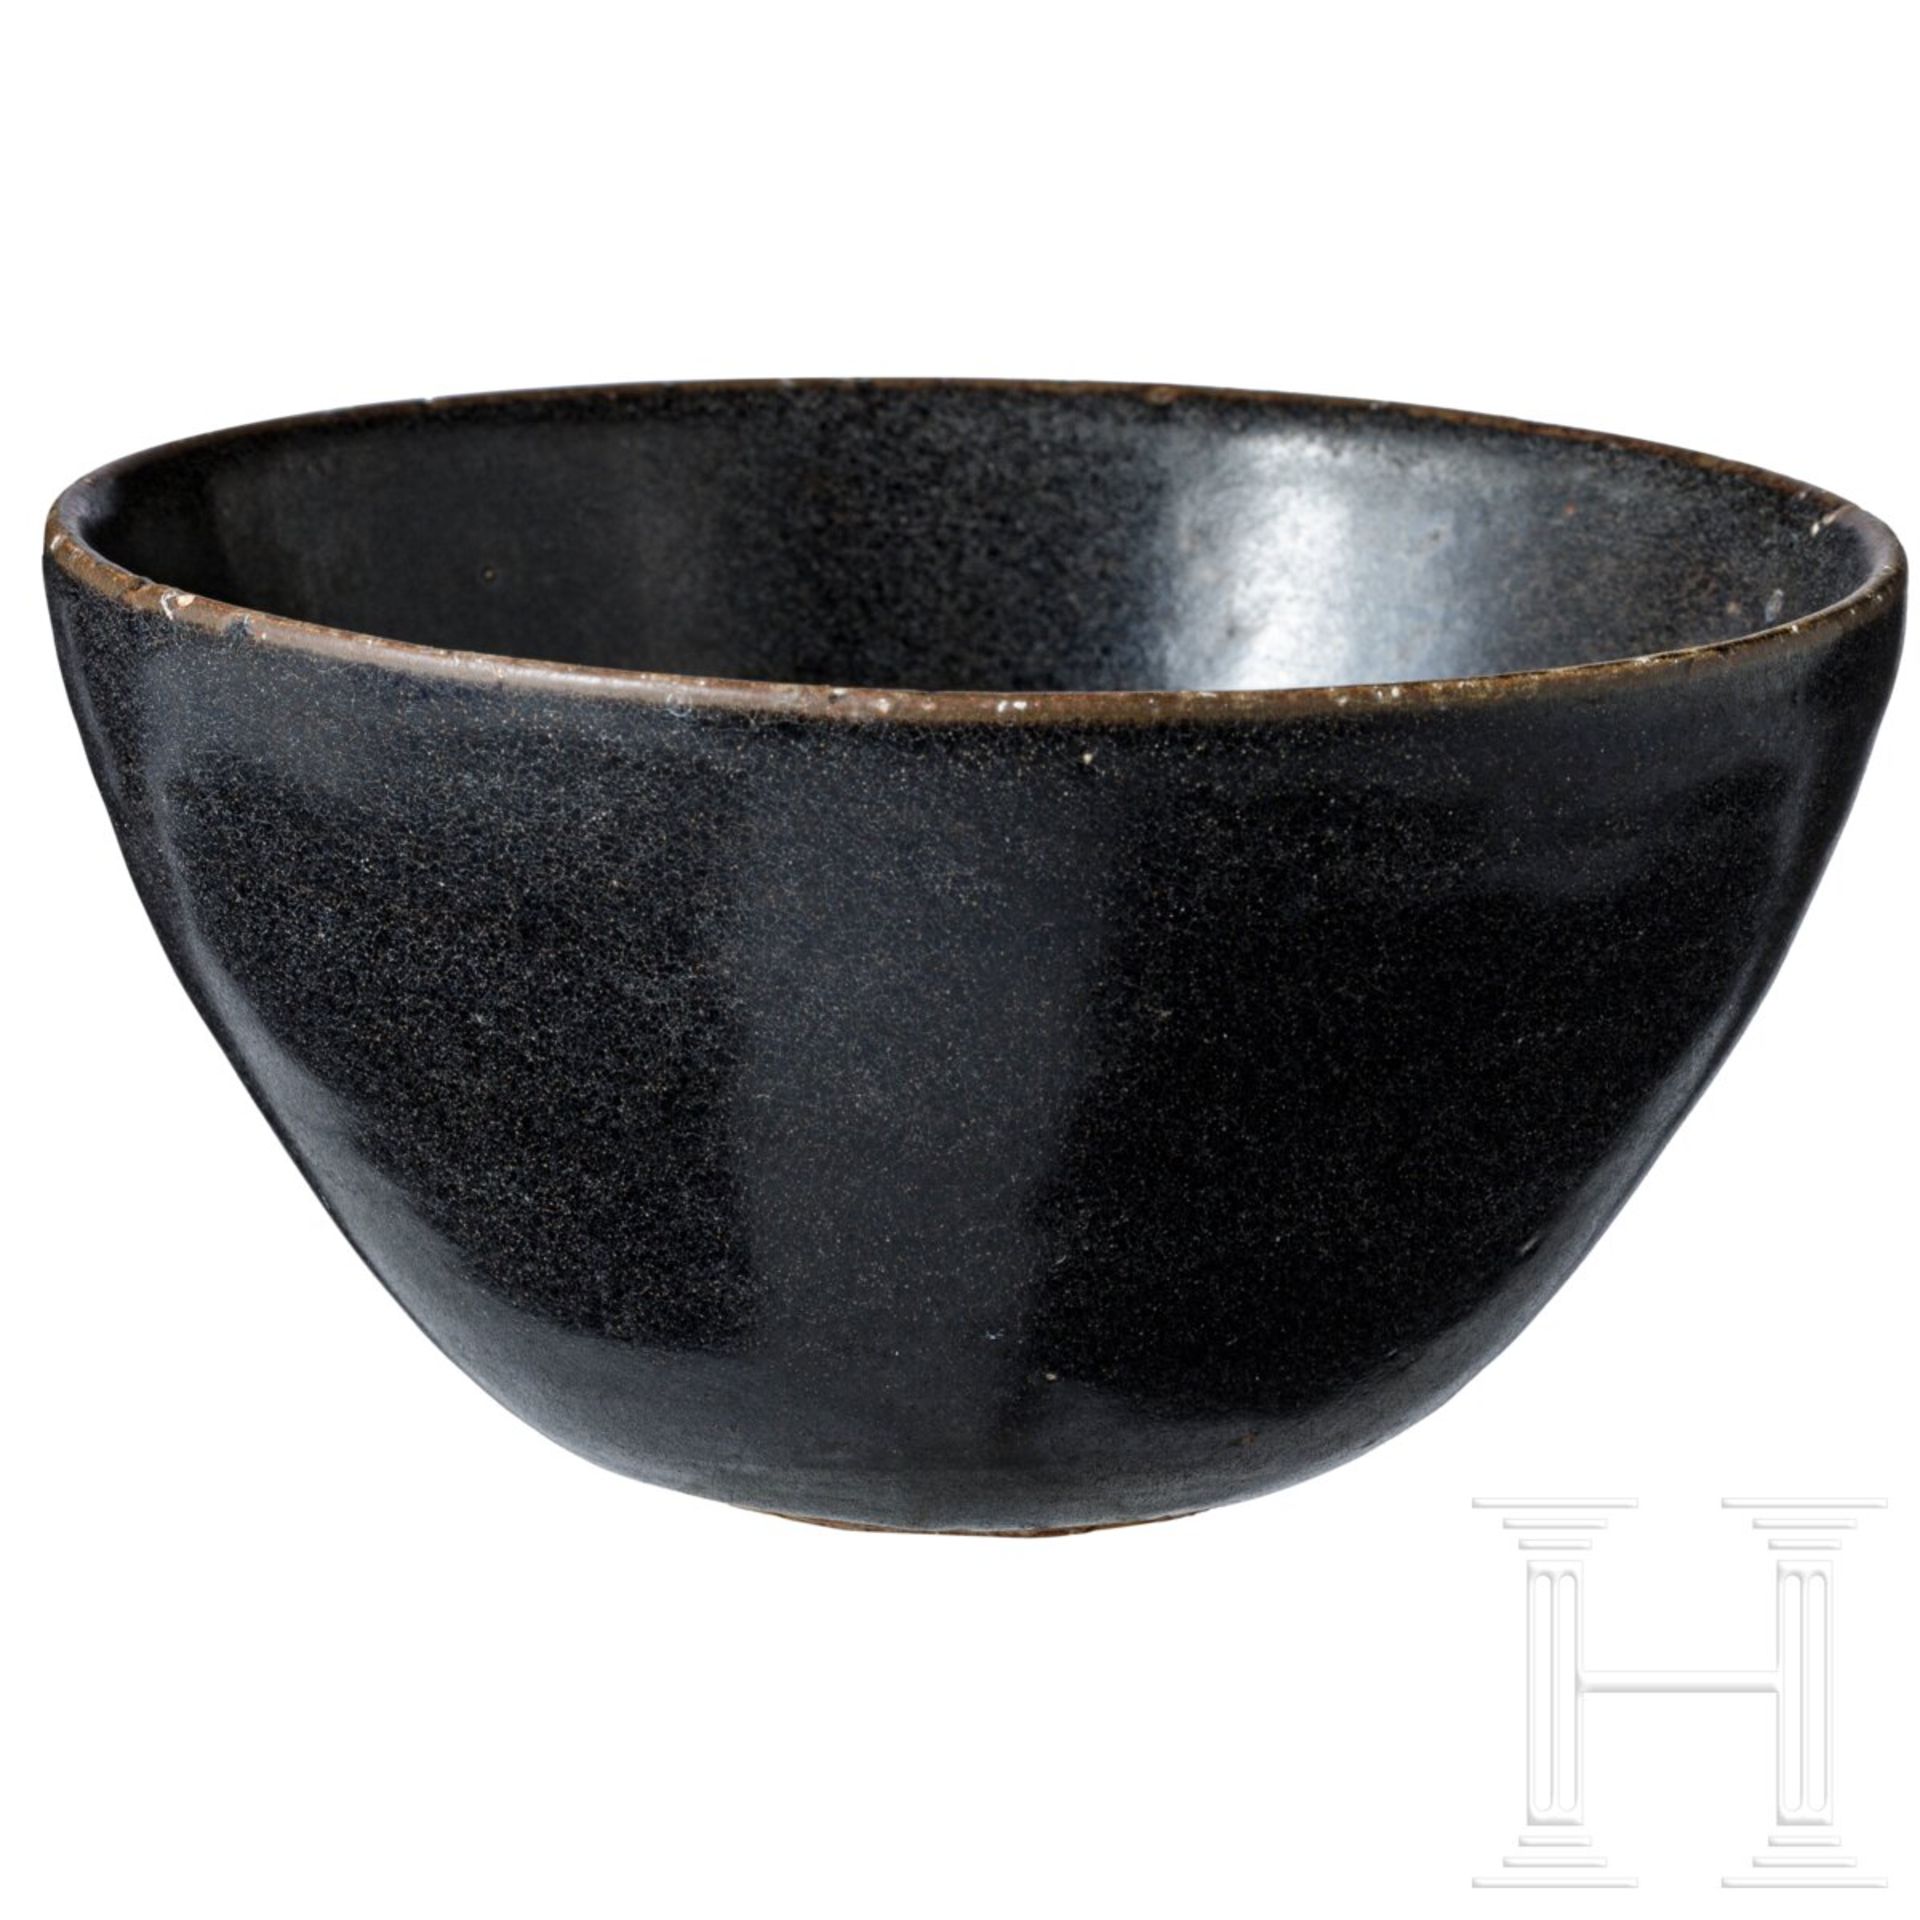 Jizhou-Teeschale, schwarz glasiert, südliche Song-Dynastie (12. - 13. Jhdt.) - Bild 3 aus 17